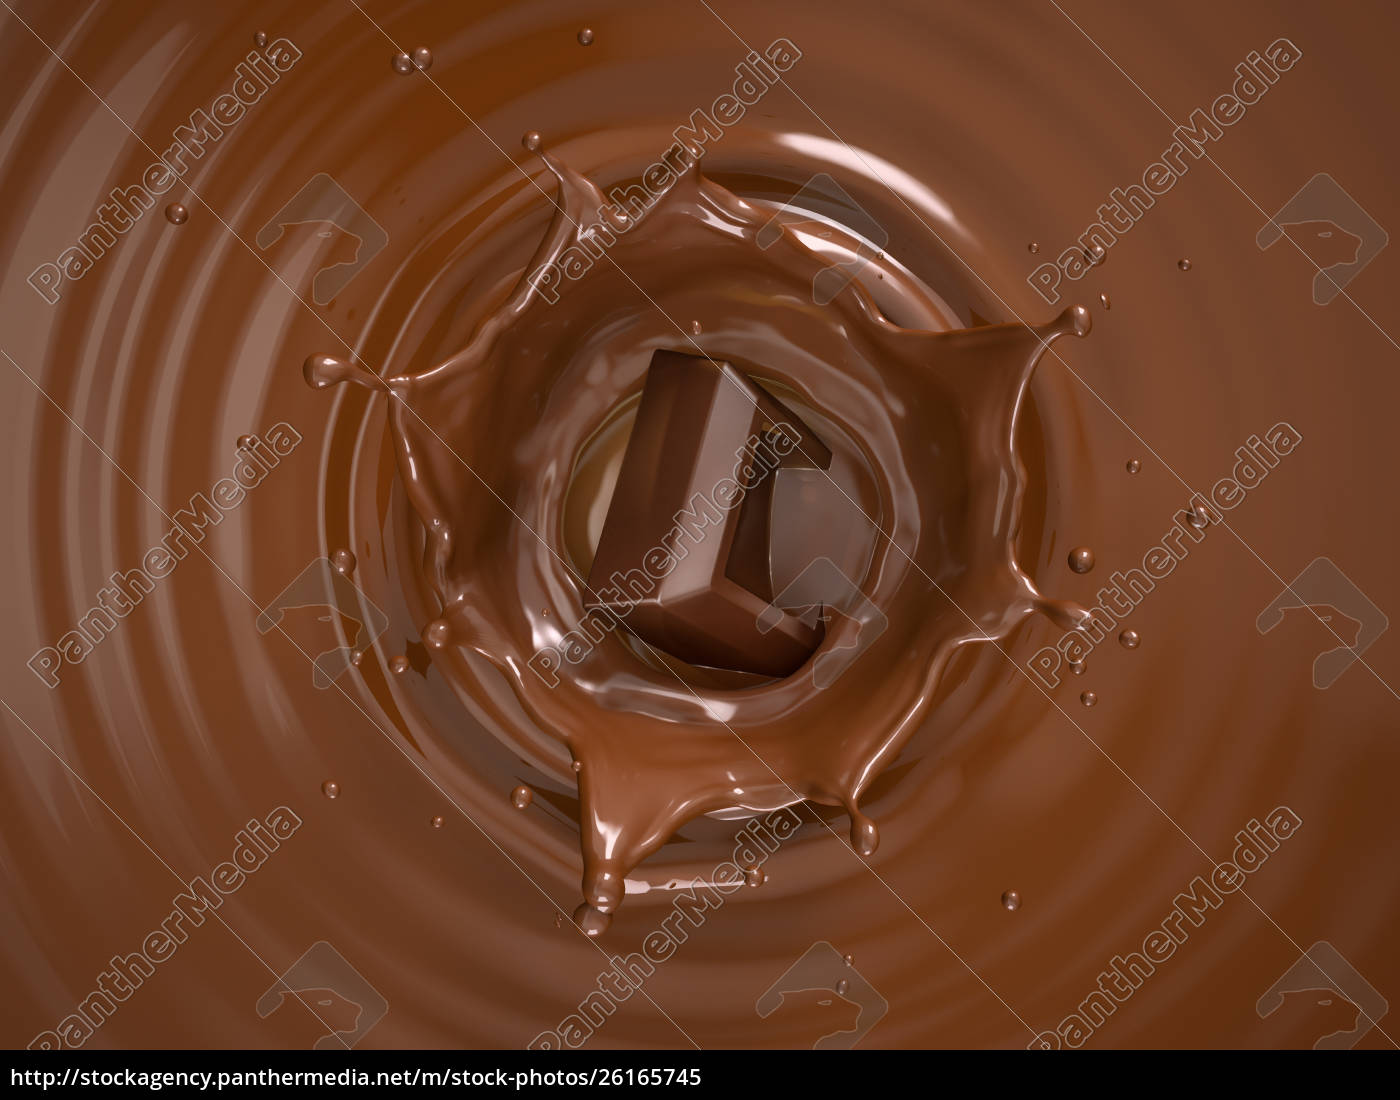 Schokoladenwürfel spritzt in flüssige Schokolade - Stockfoto ...